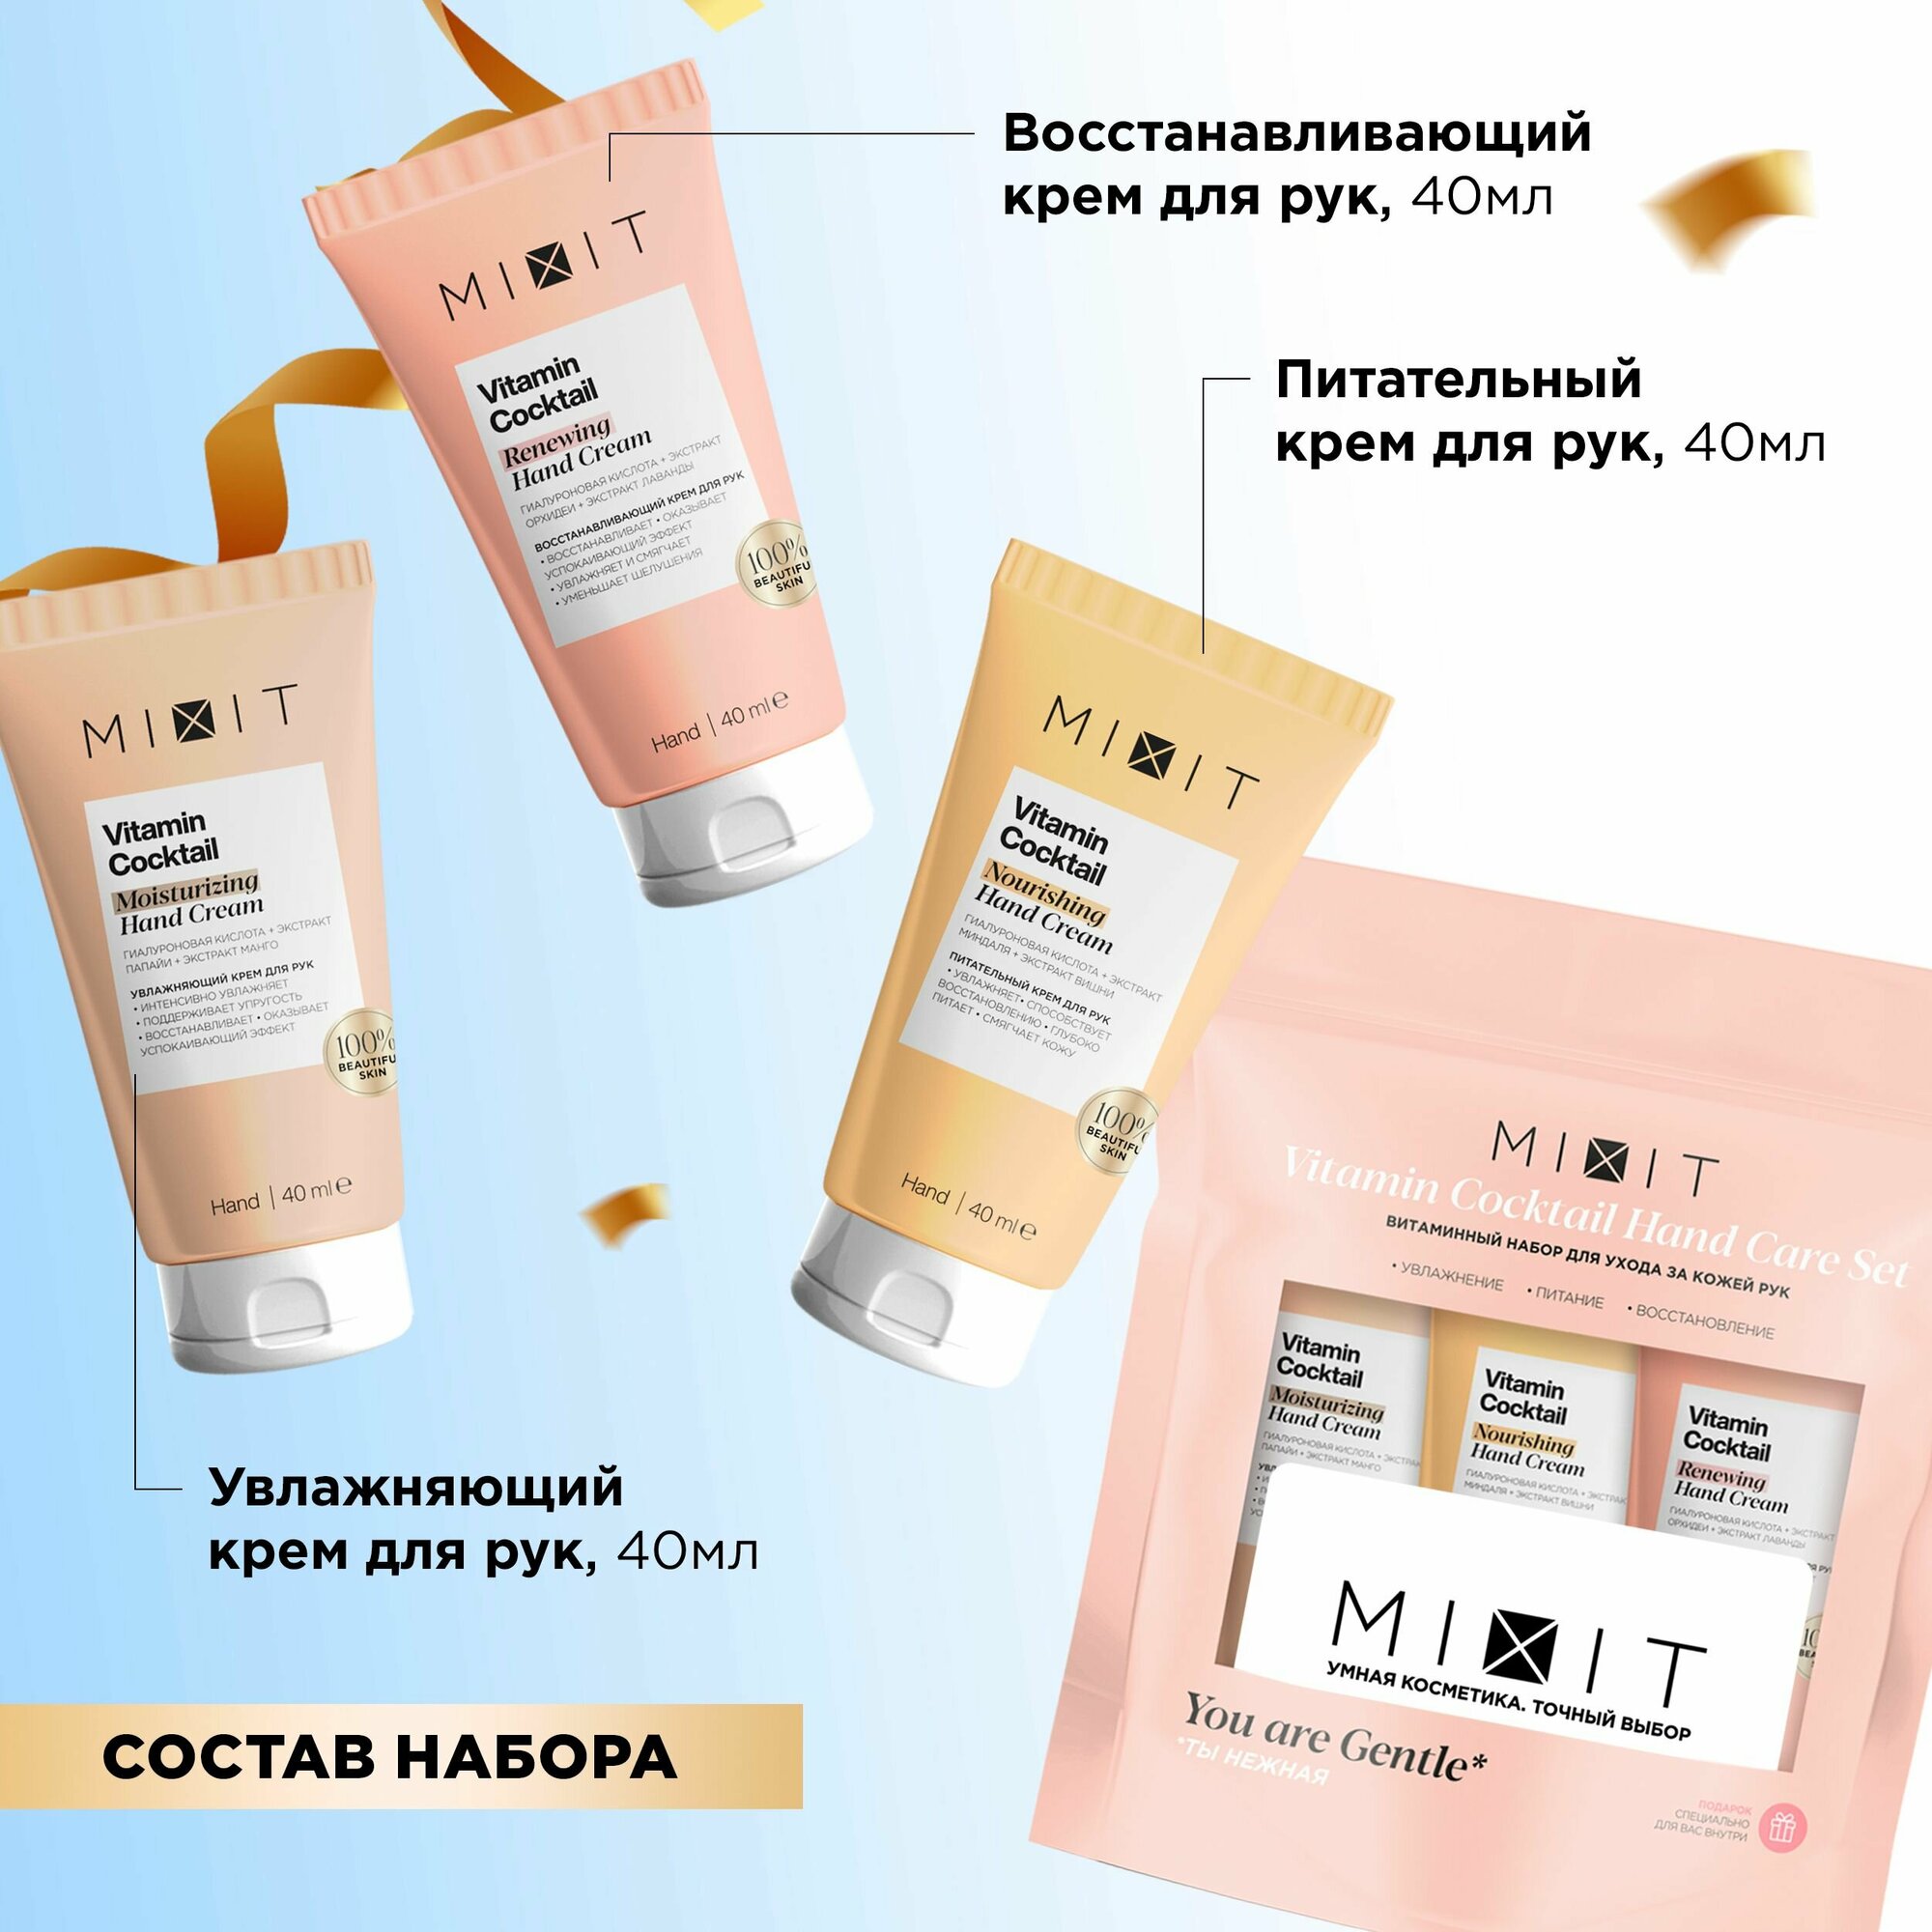 MIXIT Подарочный набор косметики по уходу за кожей рук: увлажняющий, питательный, восстанавливающий крем с гиалуроновой кислотой и натуральными экстрактами Vitamin Cocktail